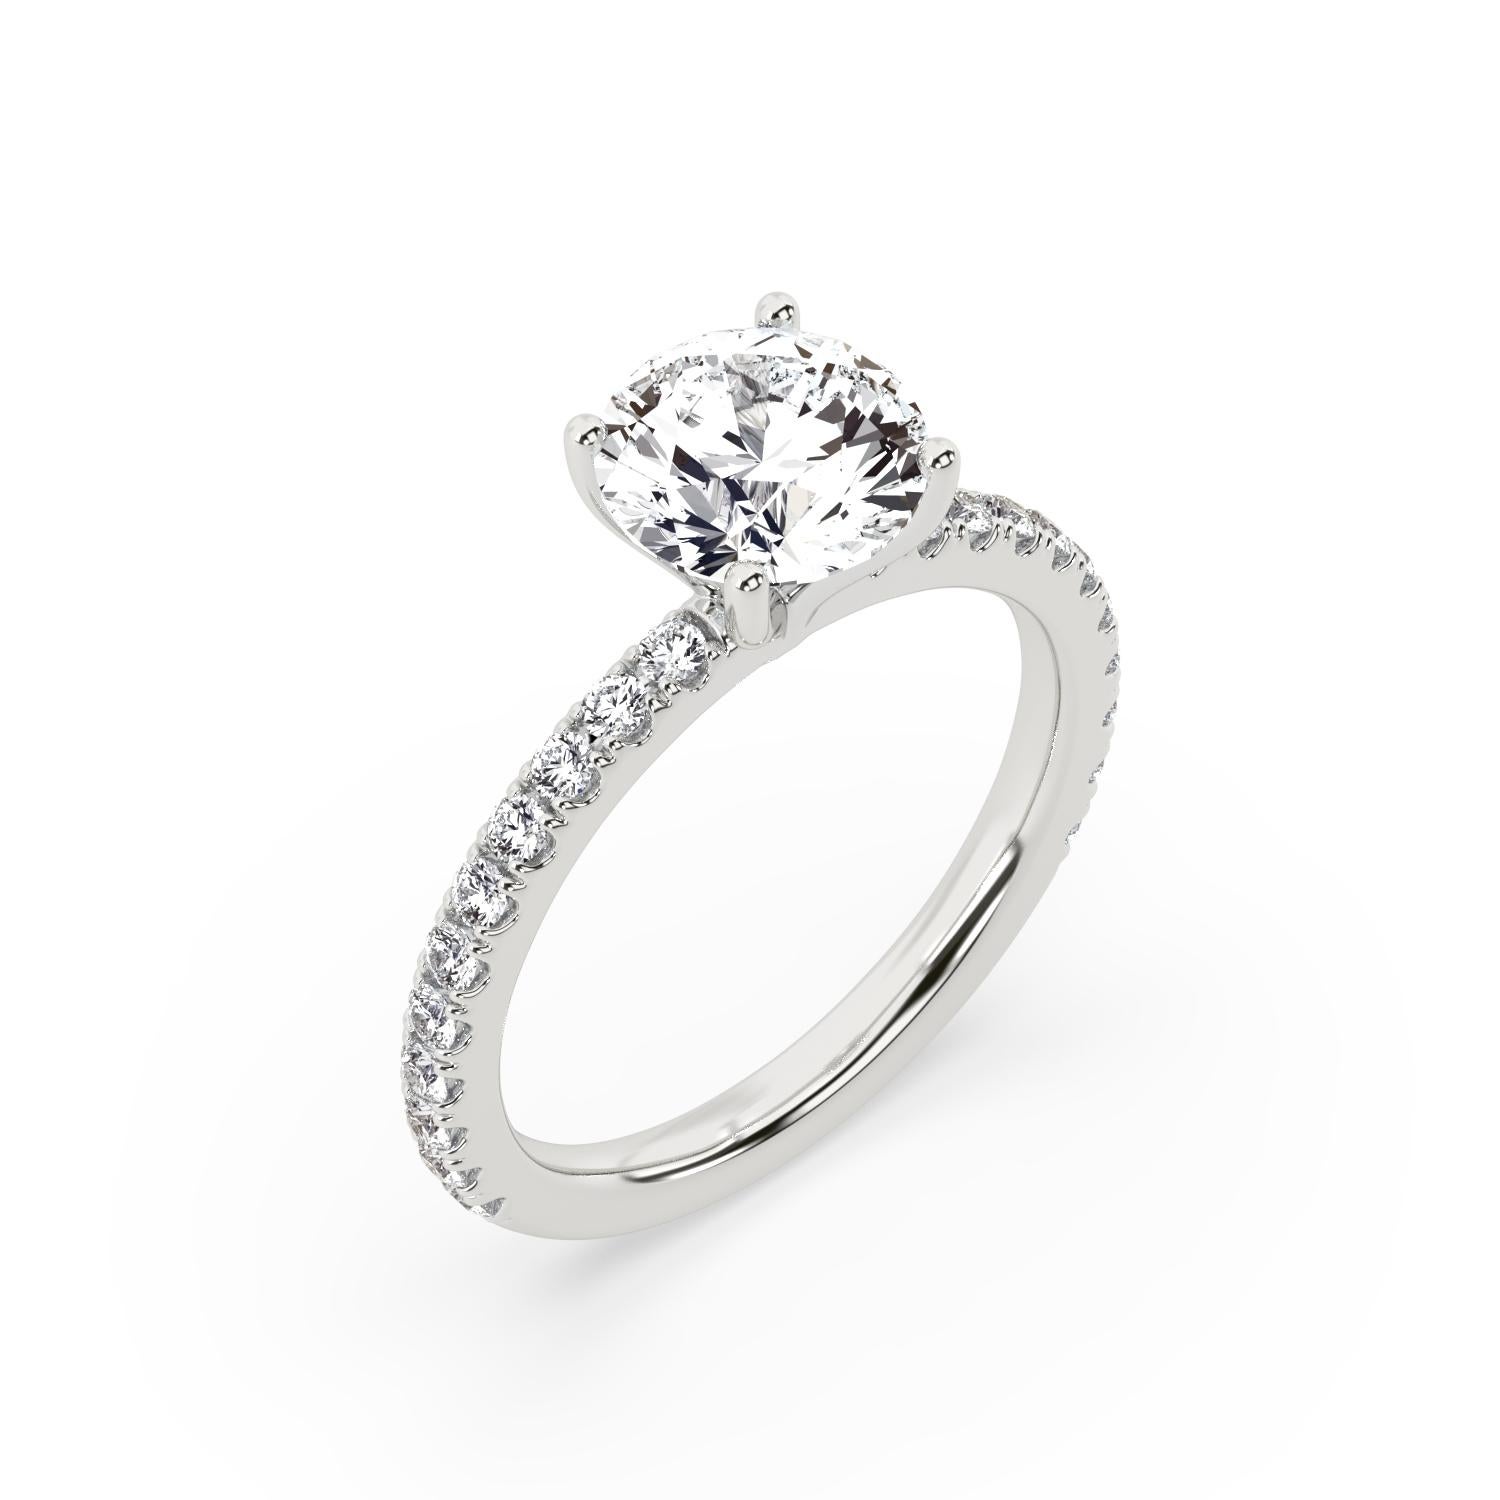 3 carat diamond ring price